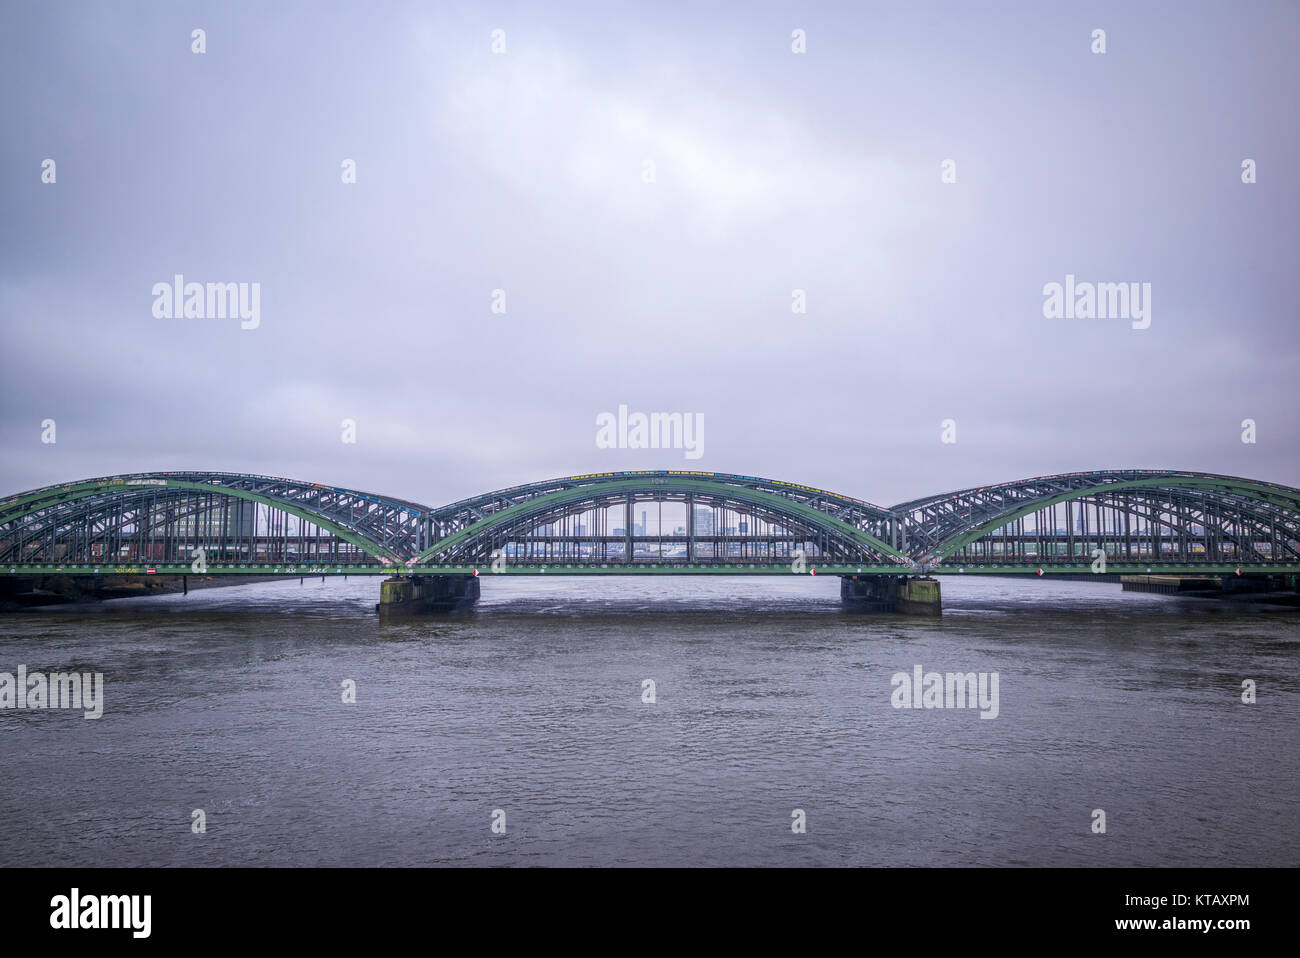 Elbbrücken, Eisenbahnbrücke über die Elbe in Hamburg, Deutschland Stock Photo